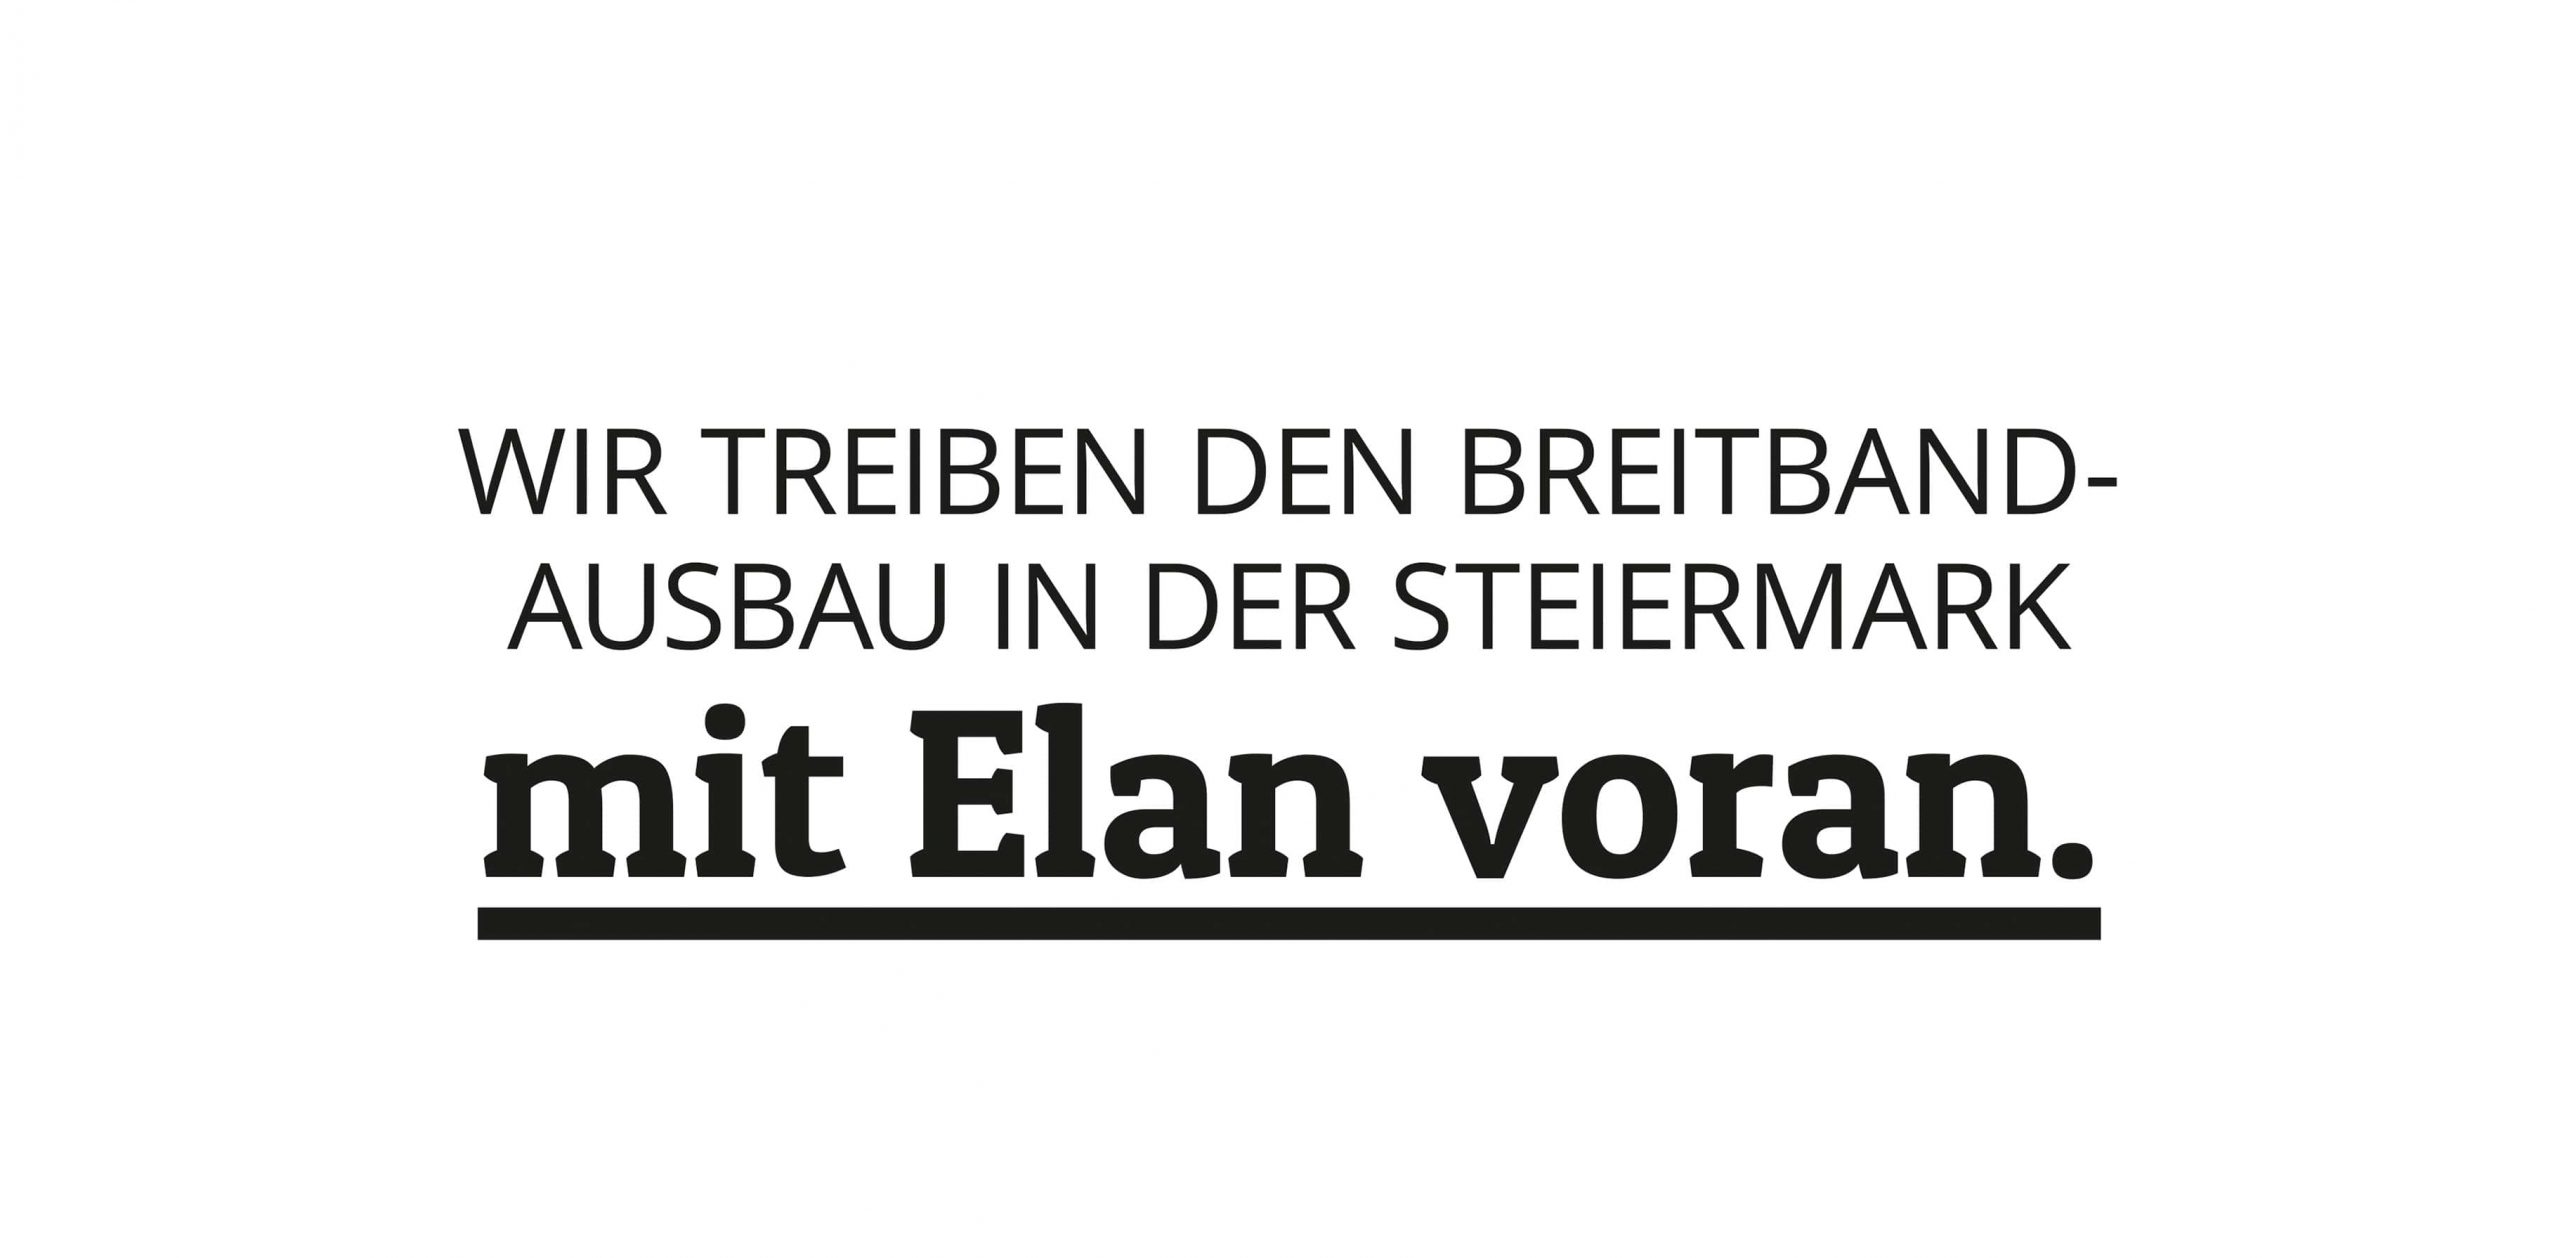 schwarzer Text auf weißem Hintergrund: Wir treiben den Bereitbandausbau in der Steiermark mit Elan voran.